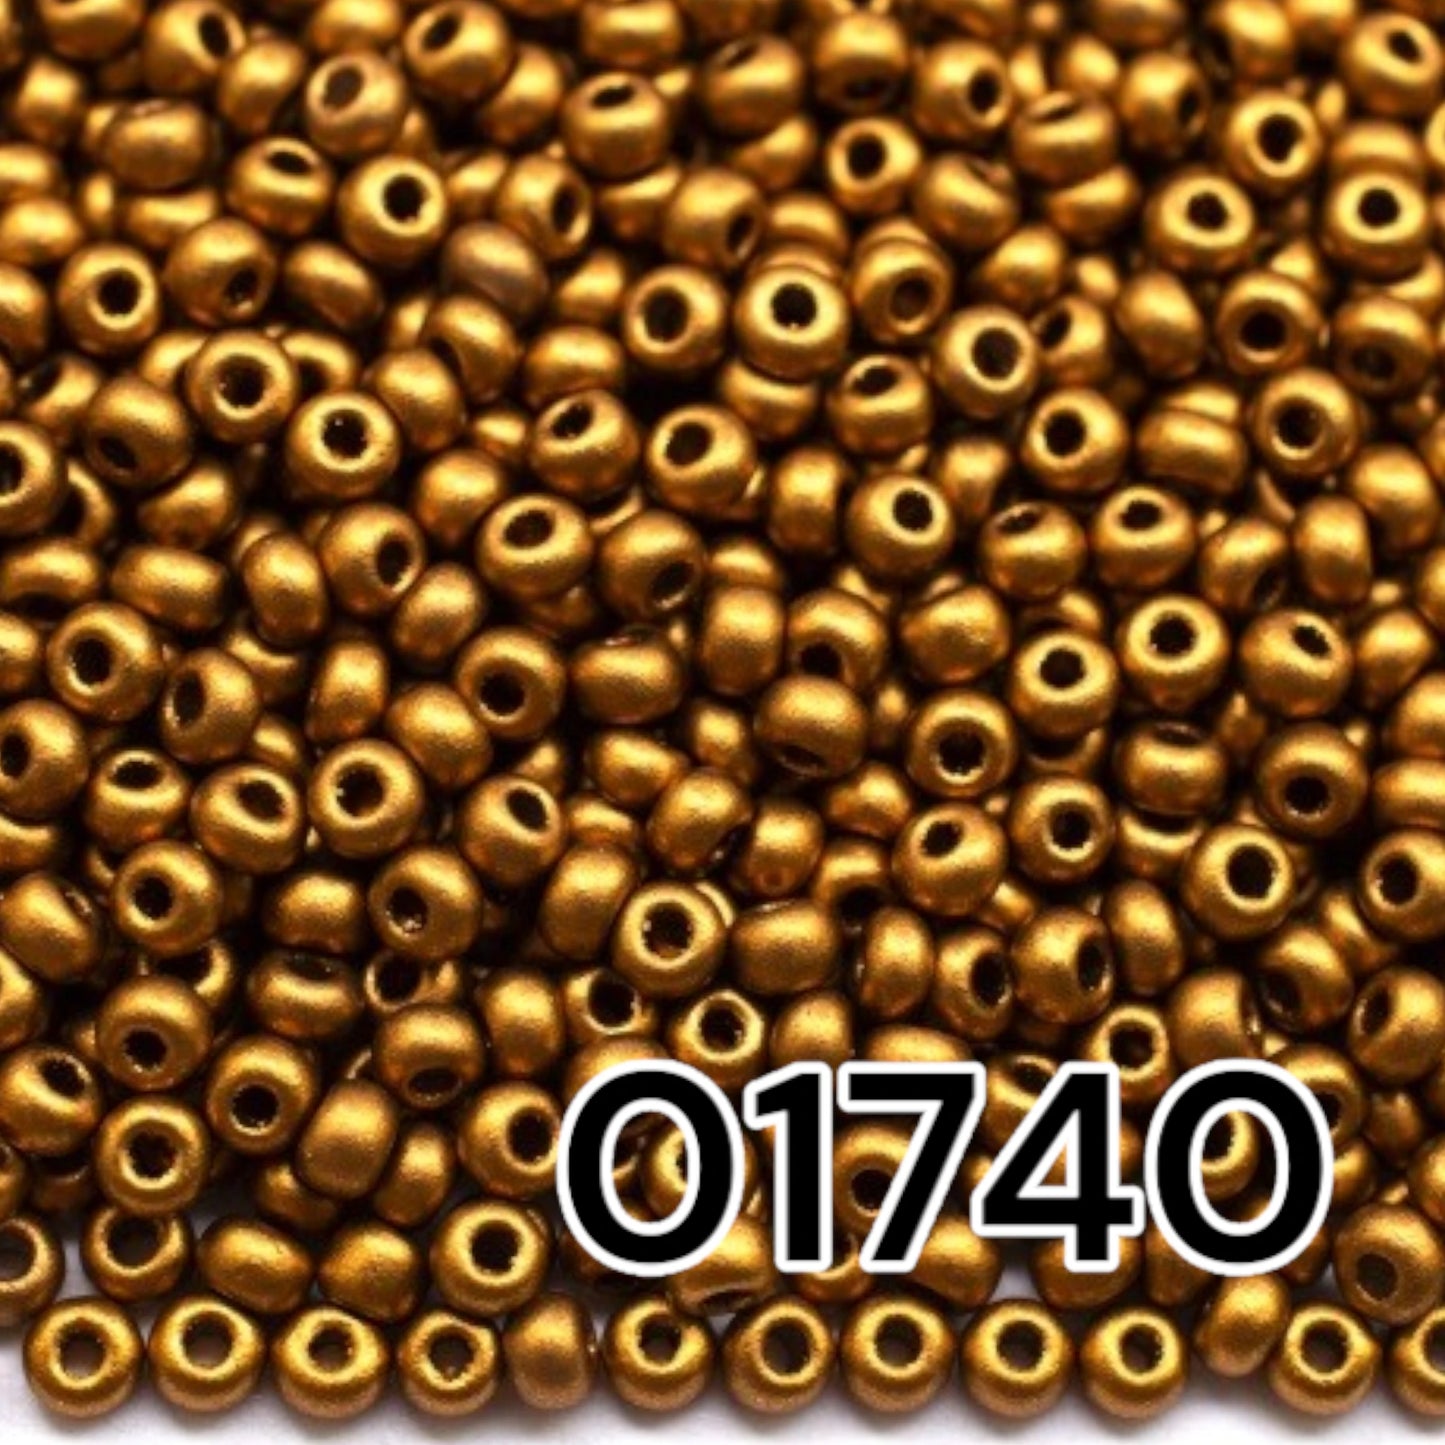 01740 Tschechische Rocailles PRECIOSA rund 10/0 Goldmetallic. Metallisch – undurchsichtiges Bronze.